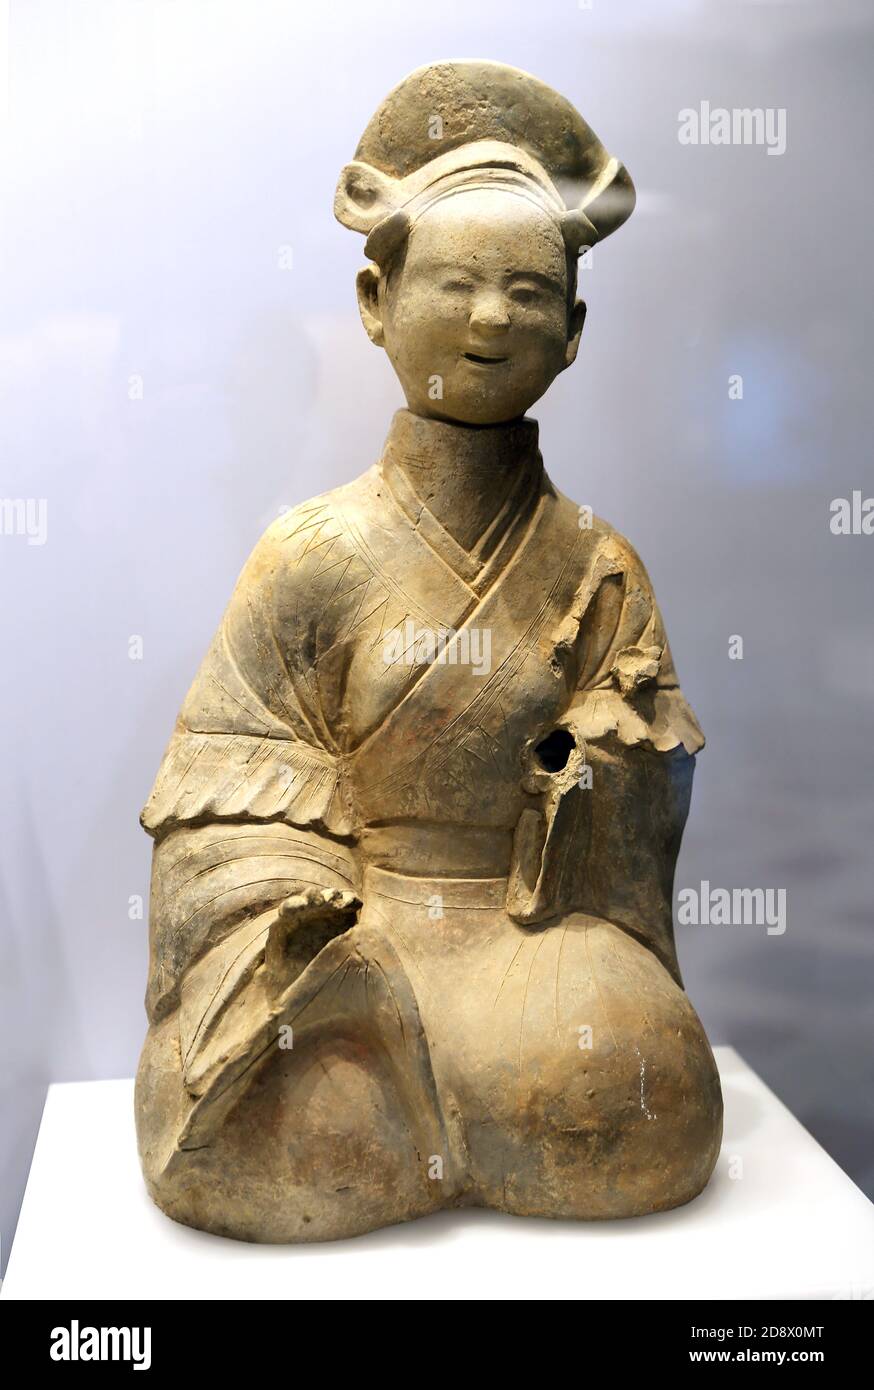 Une figurine de femme de ménage assise. Période Han (25-220 AD). Terre cuite. Style Sichuan. Sichuan. Musée du Sichuan, Chengdu Shi, Chine. Banque D'Images